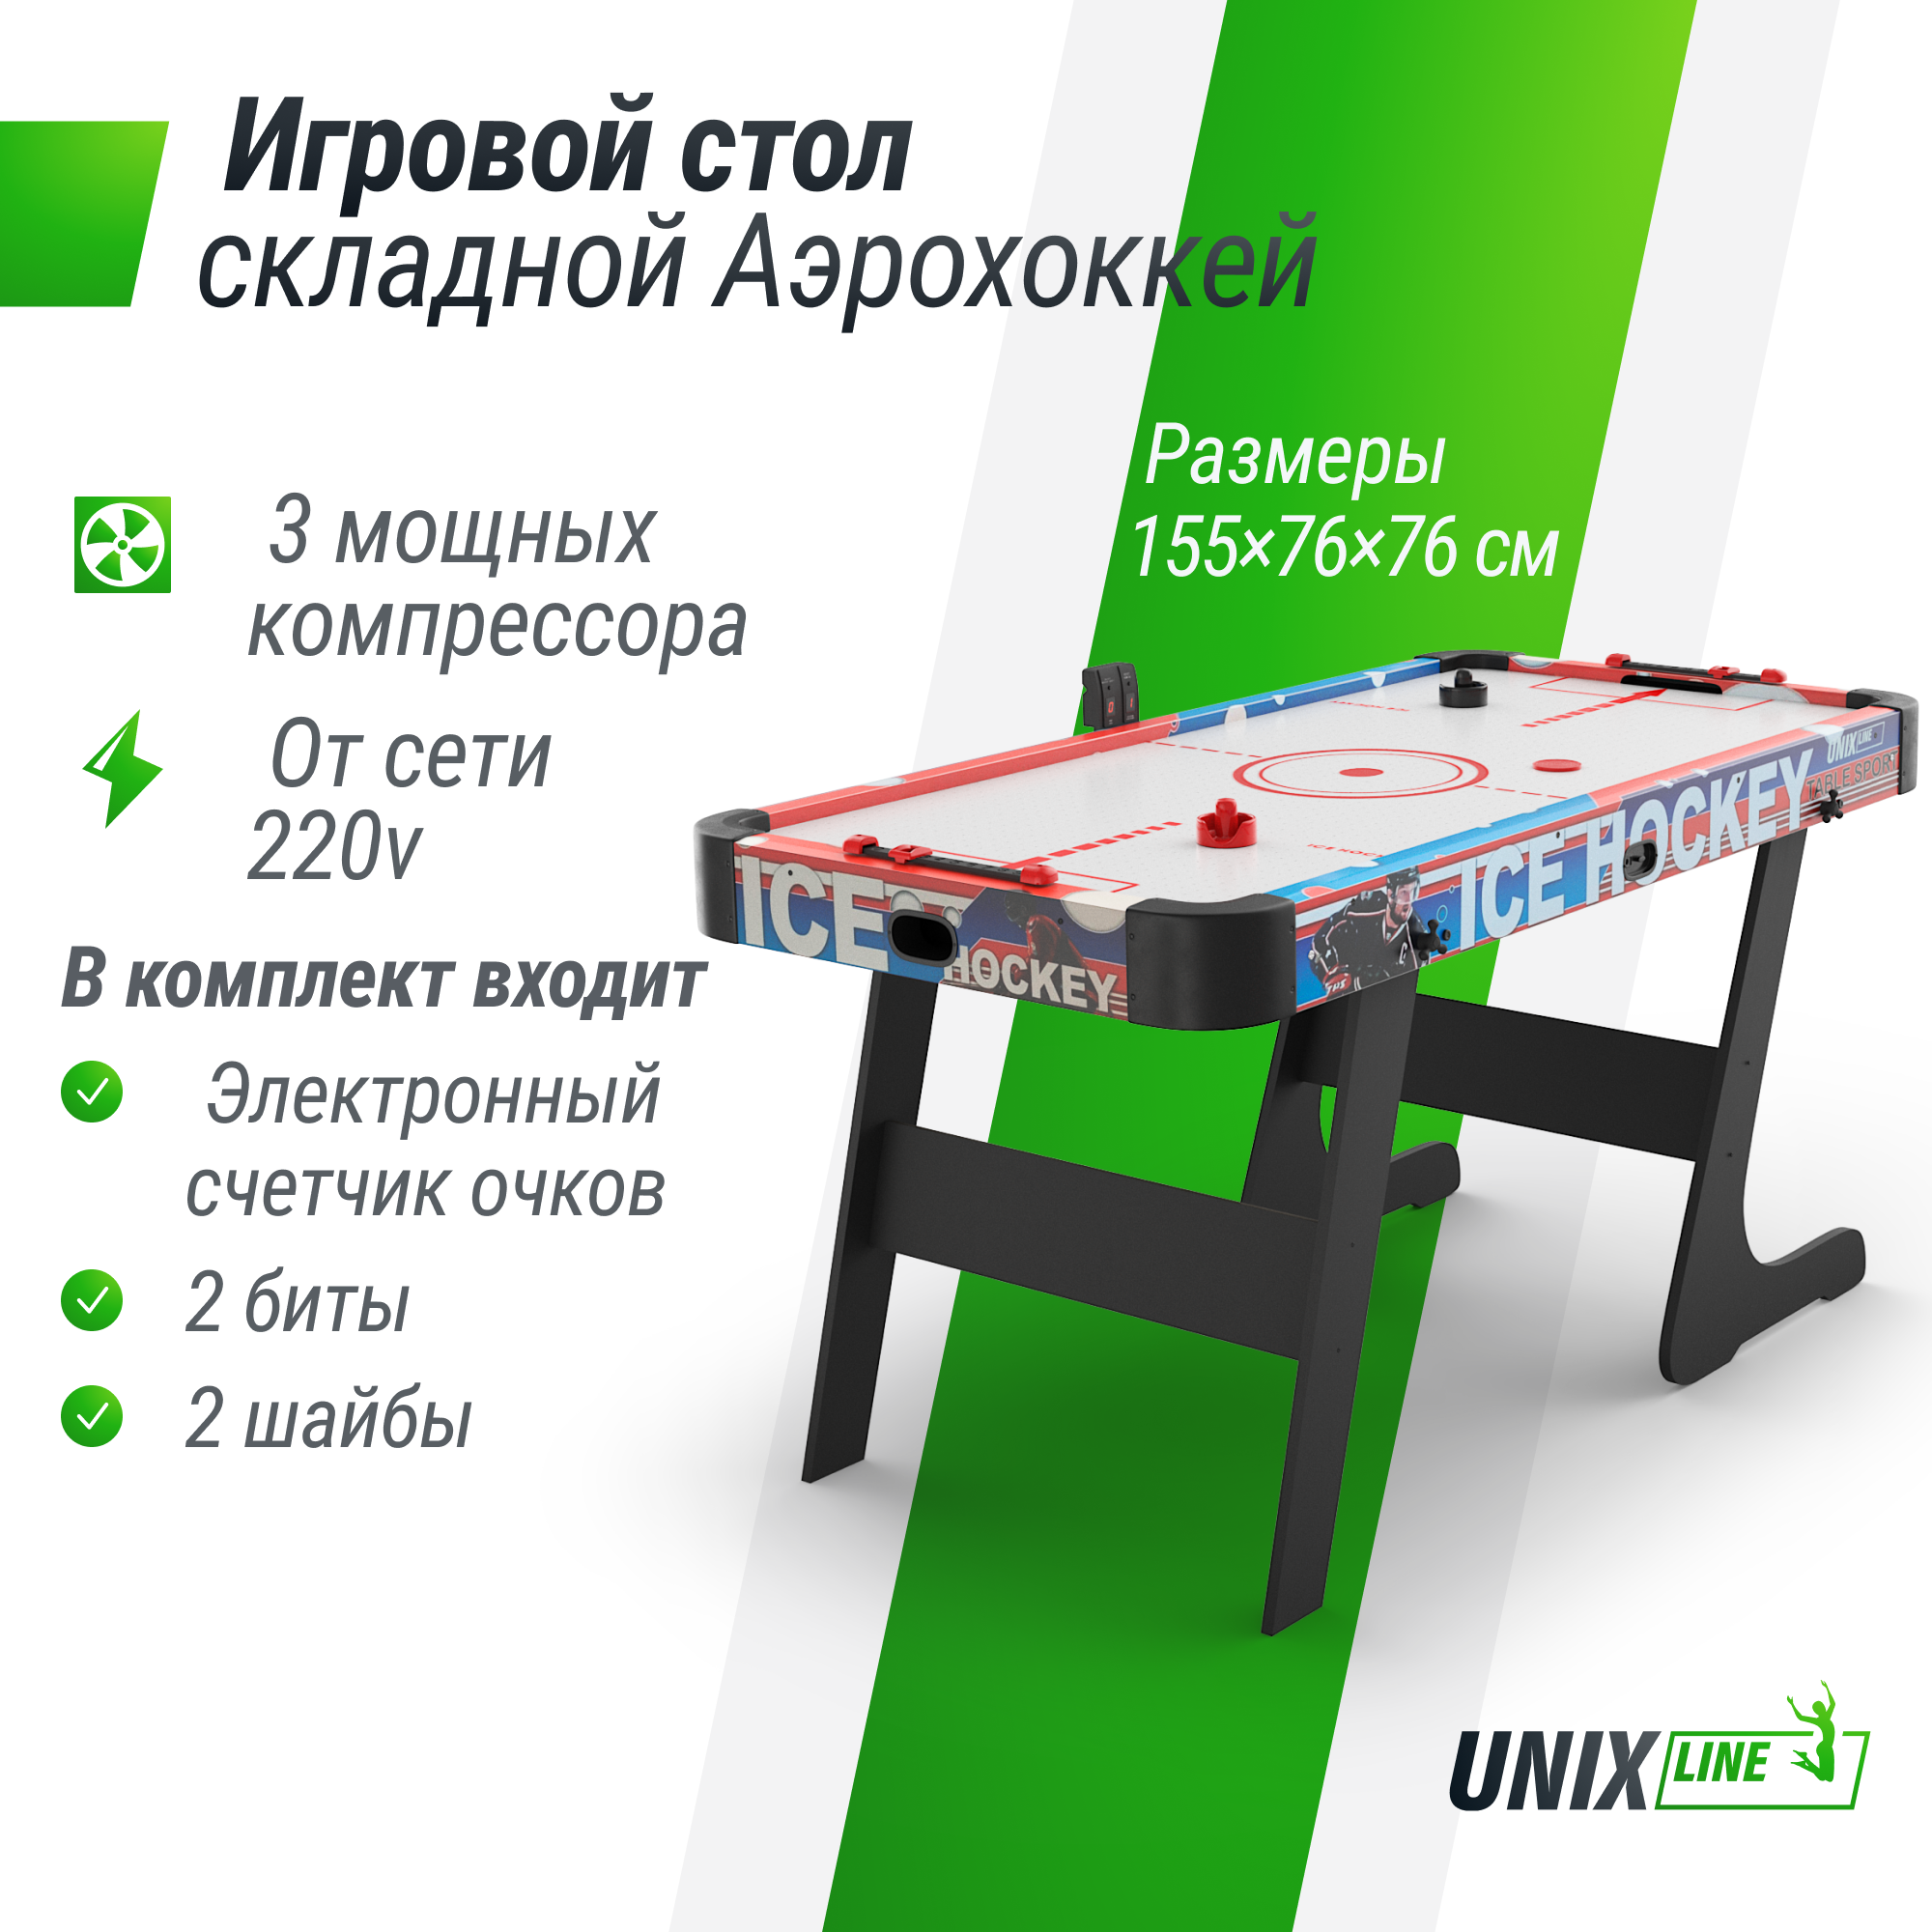 Игровой стол UNIX Line Аэрохоккей 155х76 cм, складной большой аэро хоккей от сети 220В теннисный стол складной для помещений rasson billiard rasson premium s 2260 indoor 274x152 5x76 см с сеткой 51 230 01 0